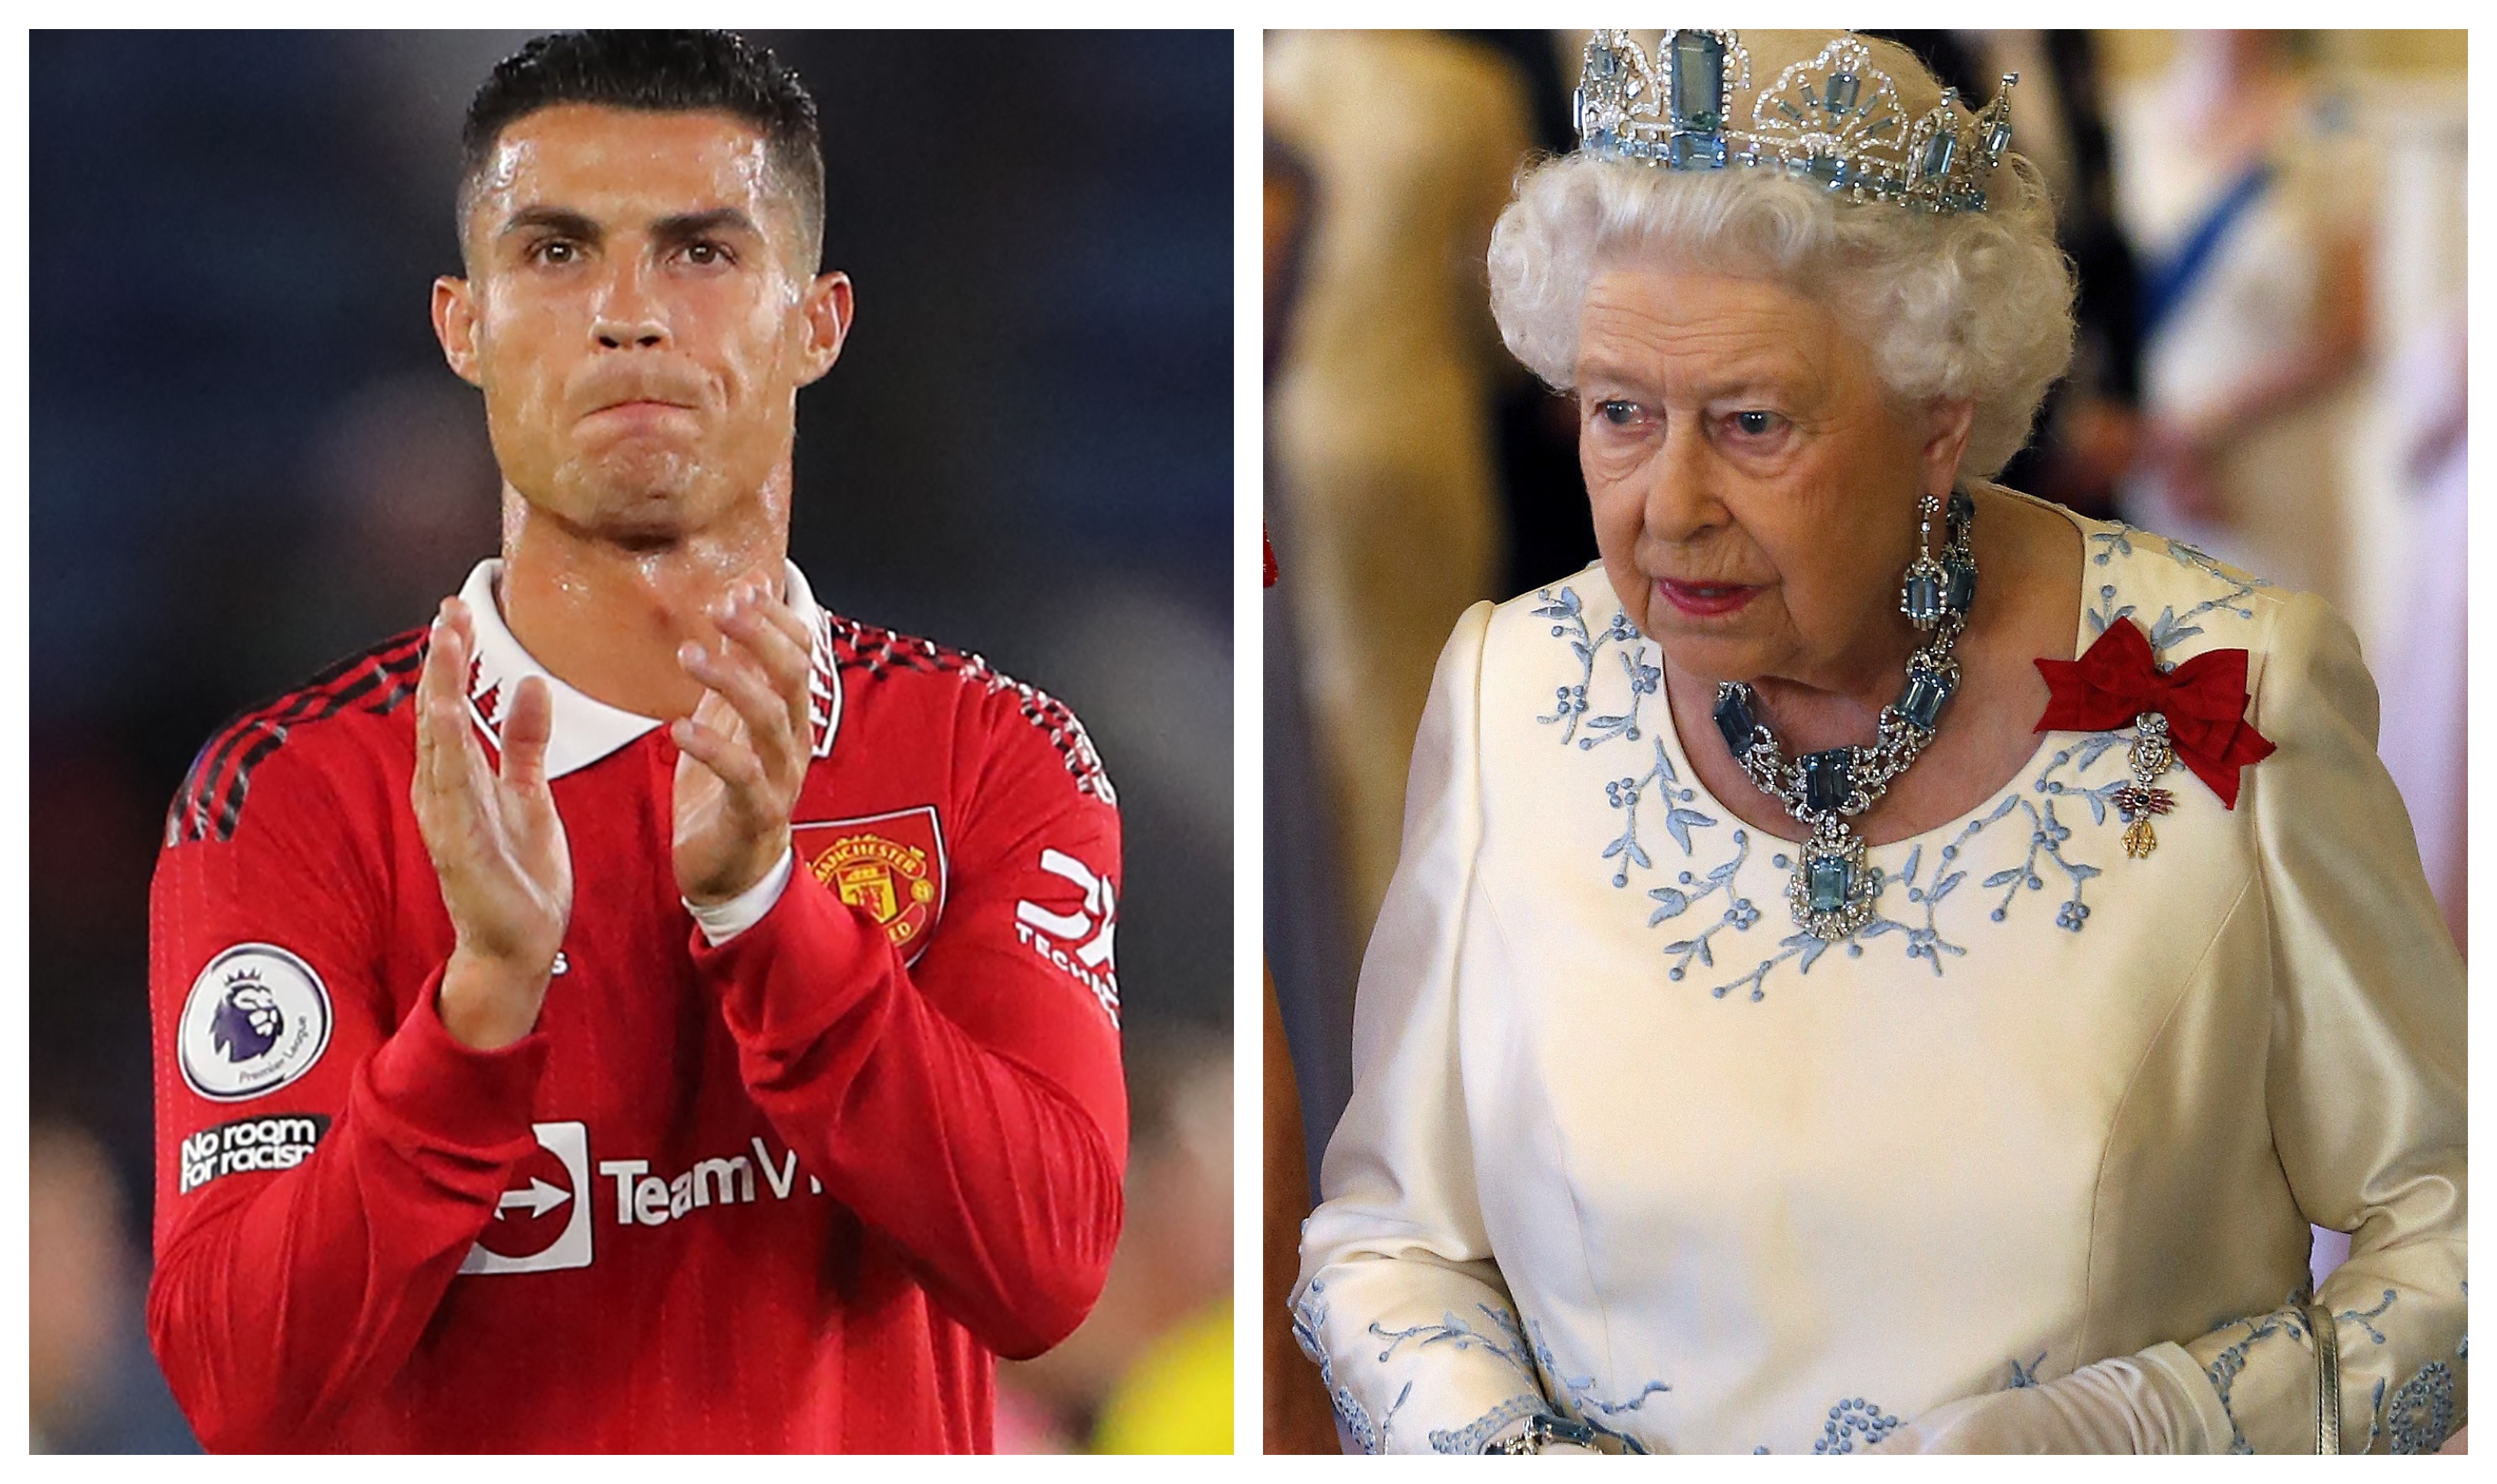 Cristiano Ronaldo fue contactado por la reina Isabel II para que le regalara una camisola autografiada. (Foto Prensa Libre: EFE y AFP)